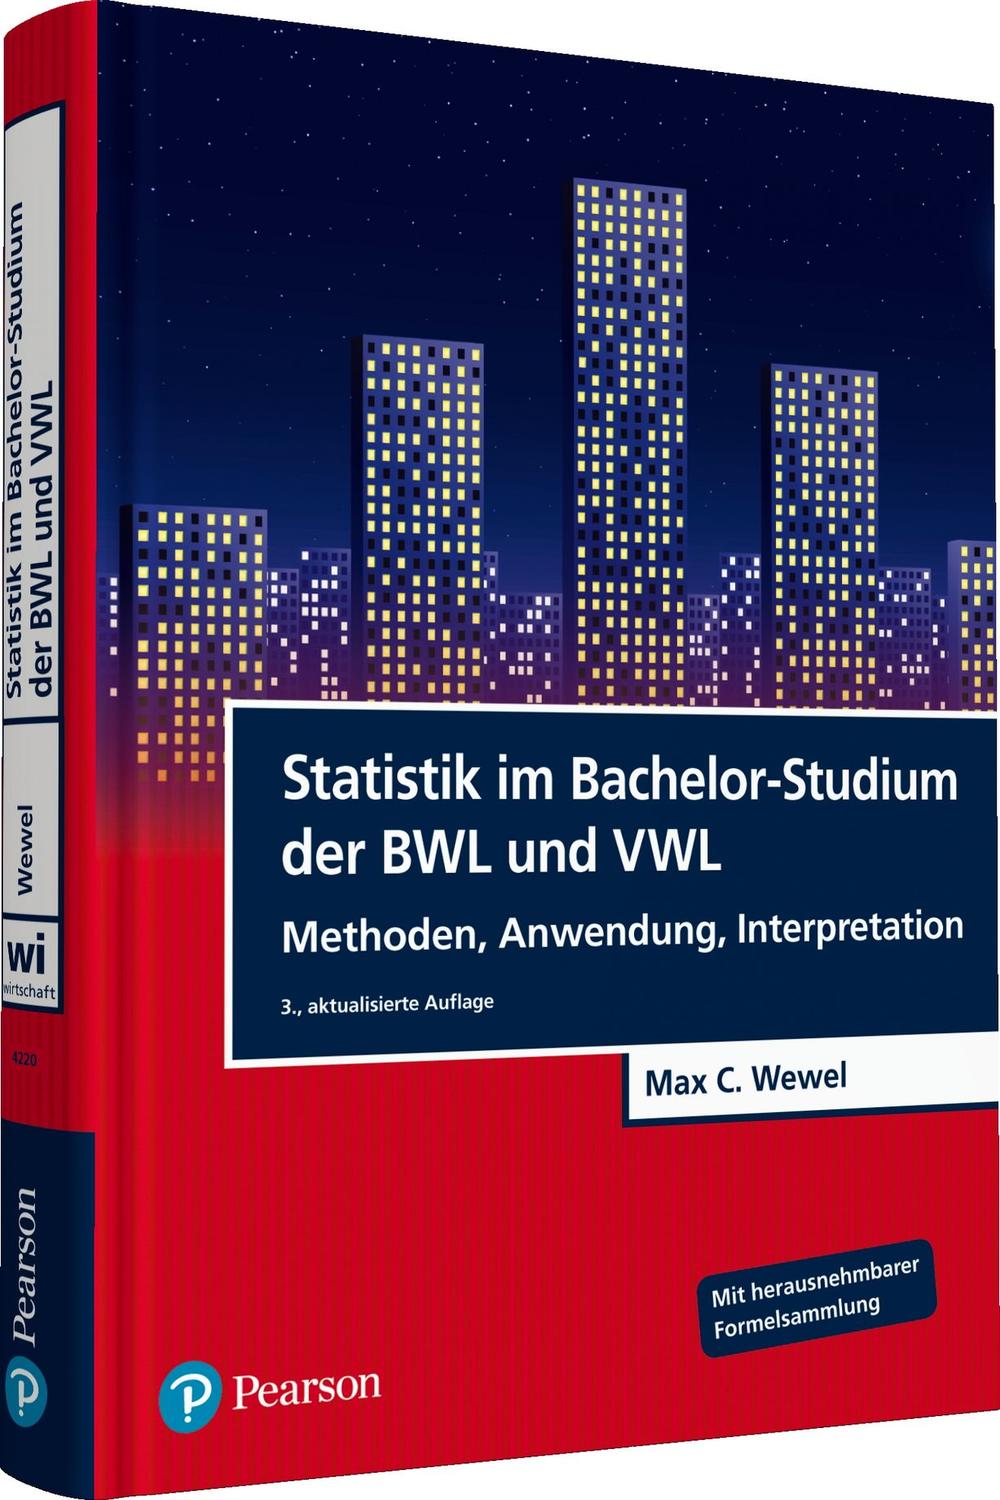 Statistik im Bachelor-Studium der BWL und VWL - Max C. Wewel,,